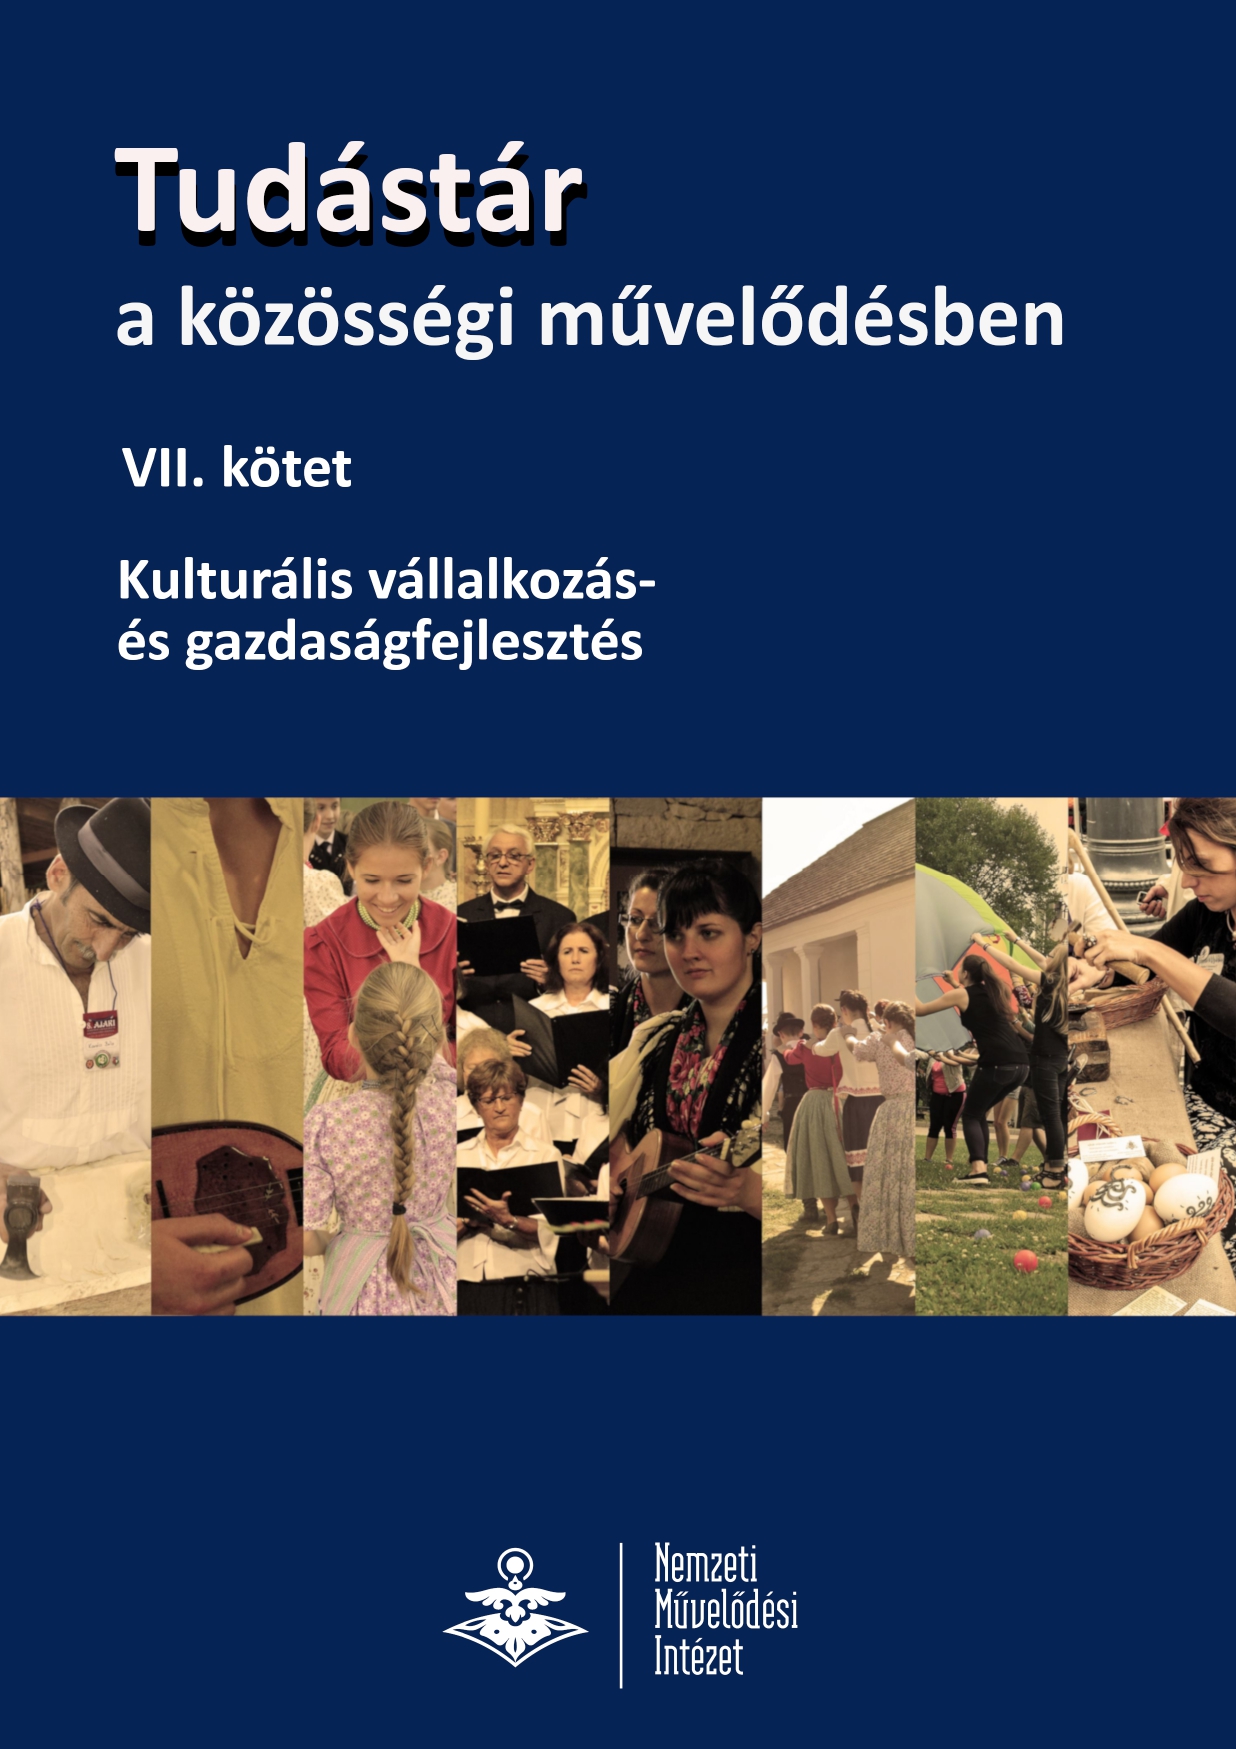 Morvay Szabolcs: Recenzió a Tudástár a közösségi művelődésben – VII. kötet Kulturális vállalkozás– és gazdaságfejlesztés című munkáról